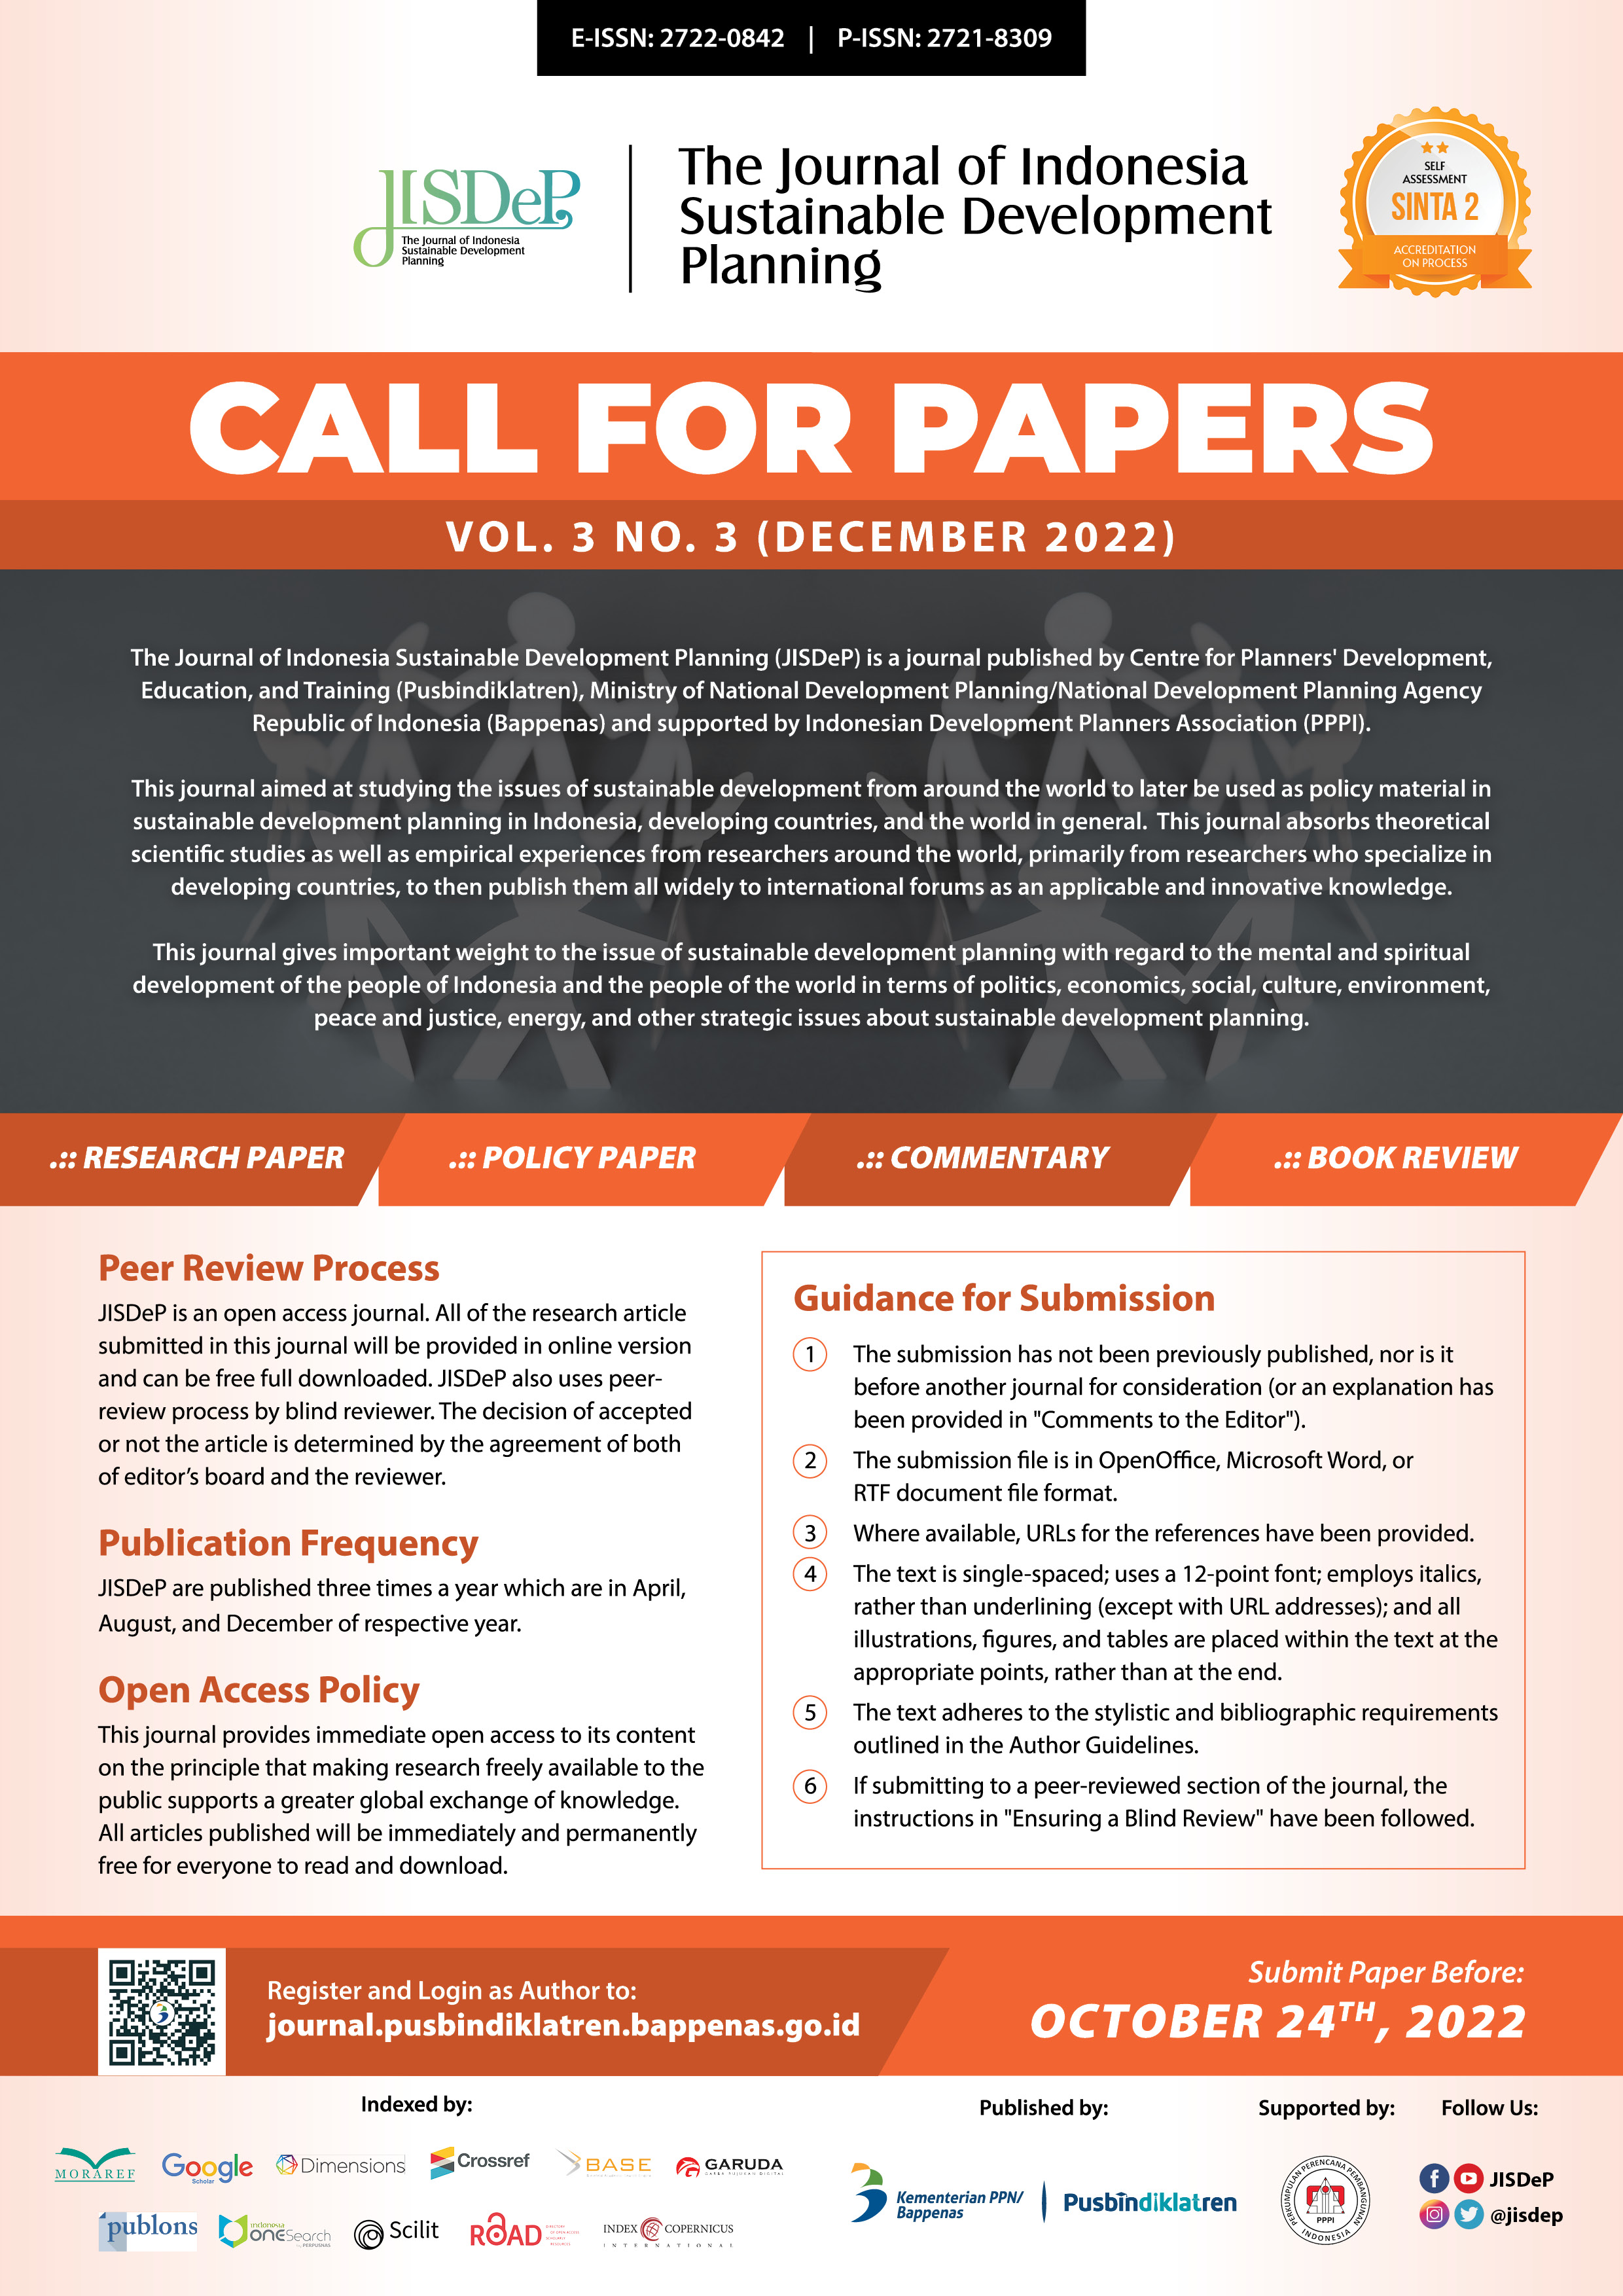 Poster Call for Papers JISDeP Vol. 3 No. 3 (Dec 2022).jpg